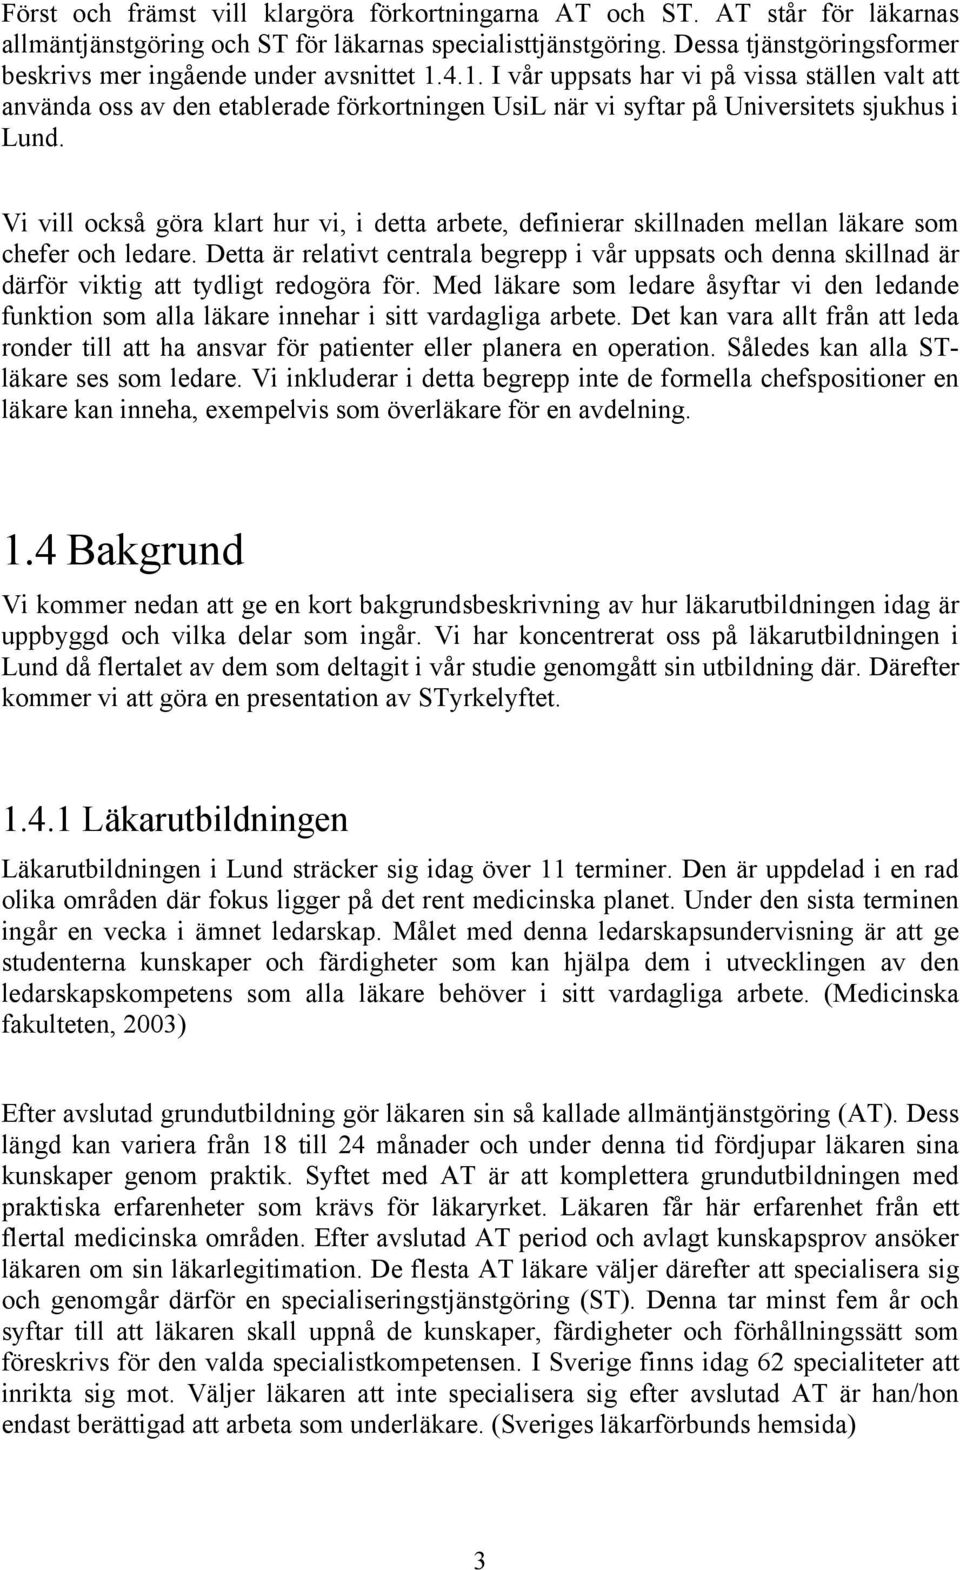 4.1. I vår uppsats har vi på vissa ställen valt att använda oss av den etablerade förkortningen UsiL när vi syftar på Universitets sjukhus i Lund.